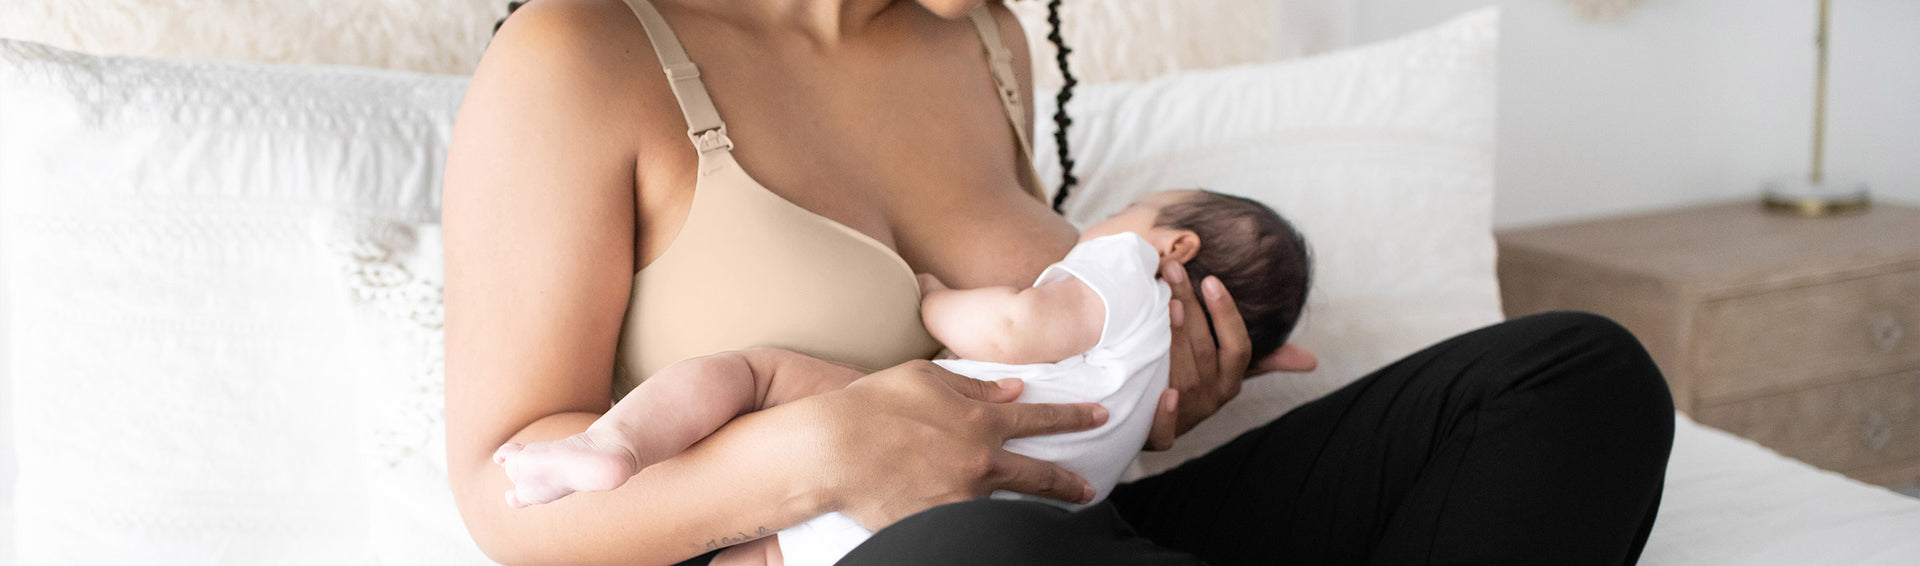 Nursing Bras, Breastfeeding Bras